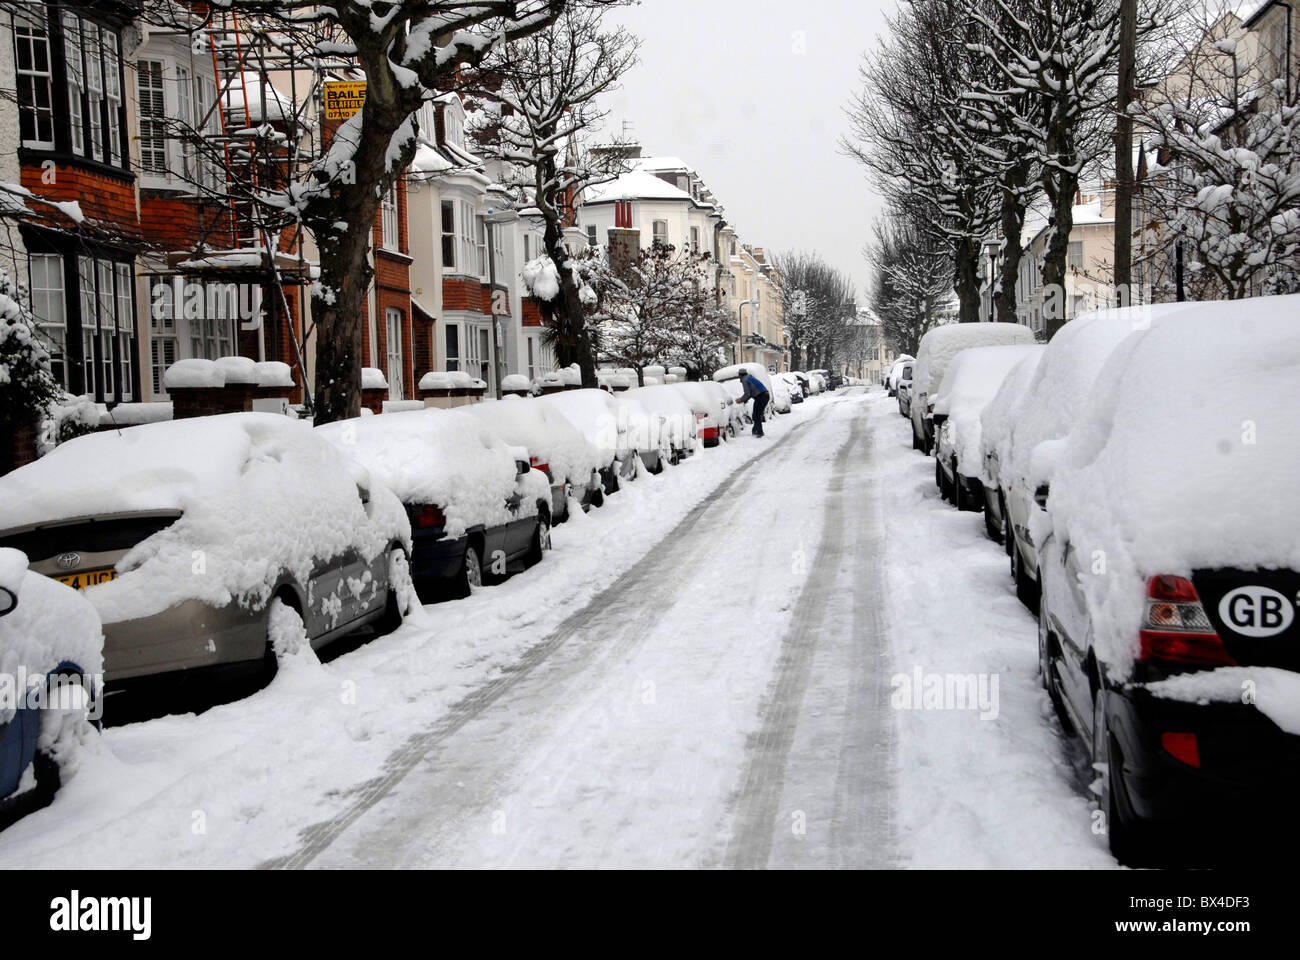 Les rues de la neige liée à Brighton au cours de fortes chutes de neige en hiver, Sussex, UK Banque D'Images